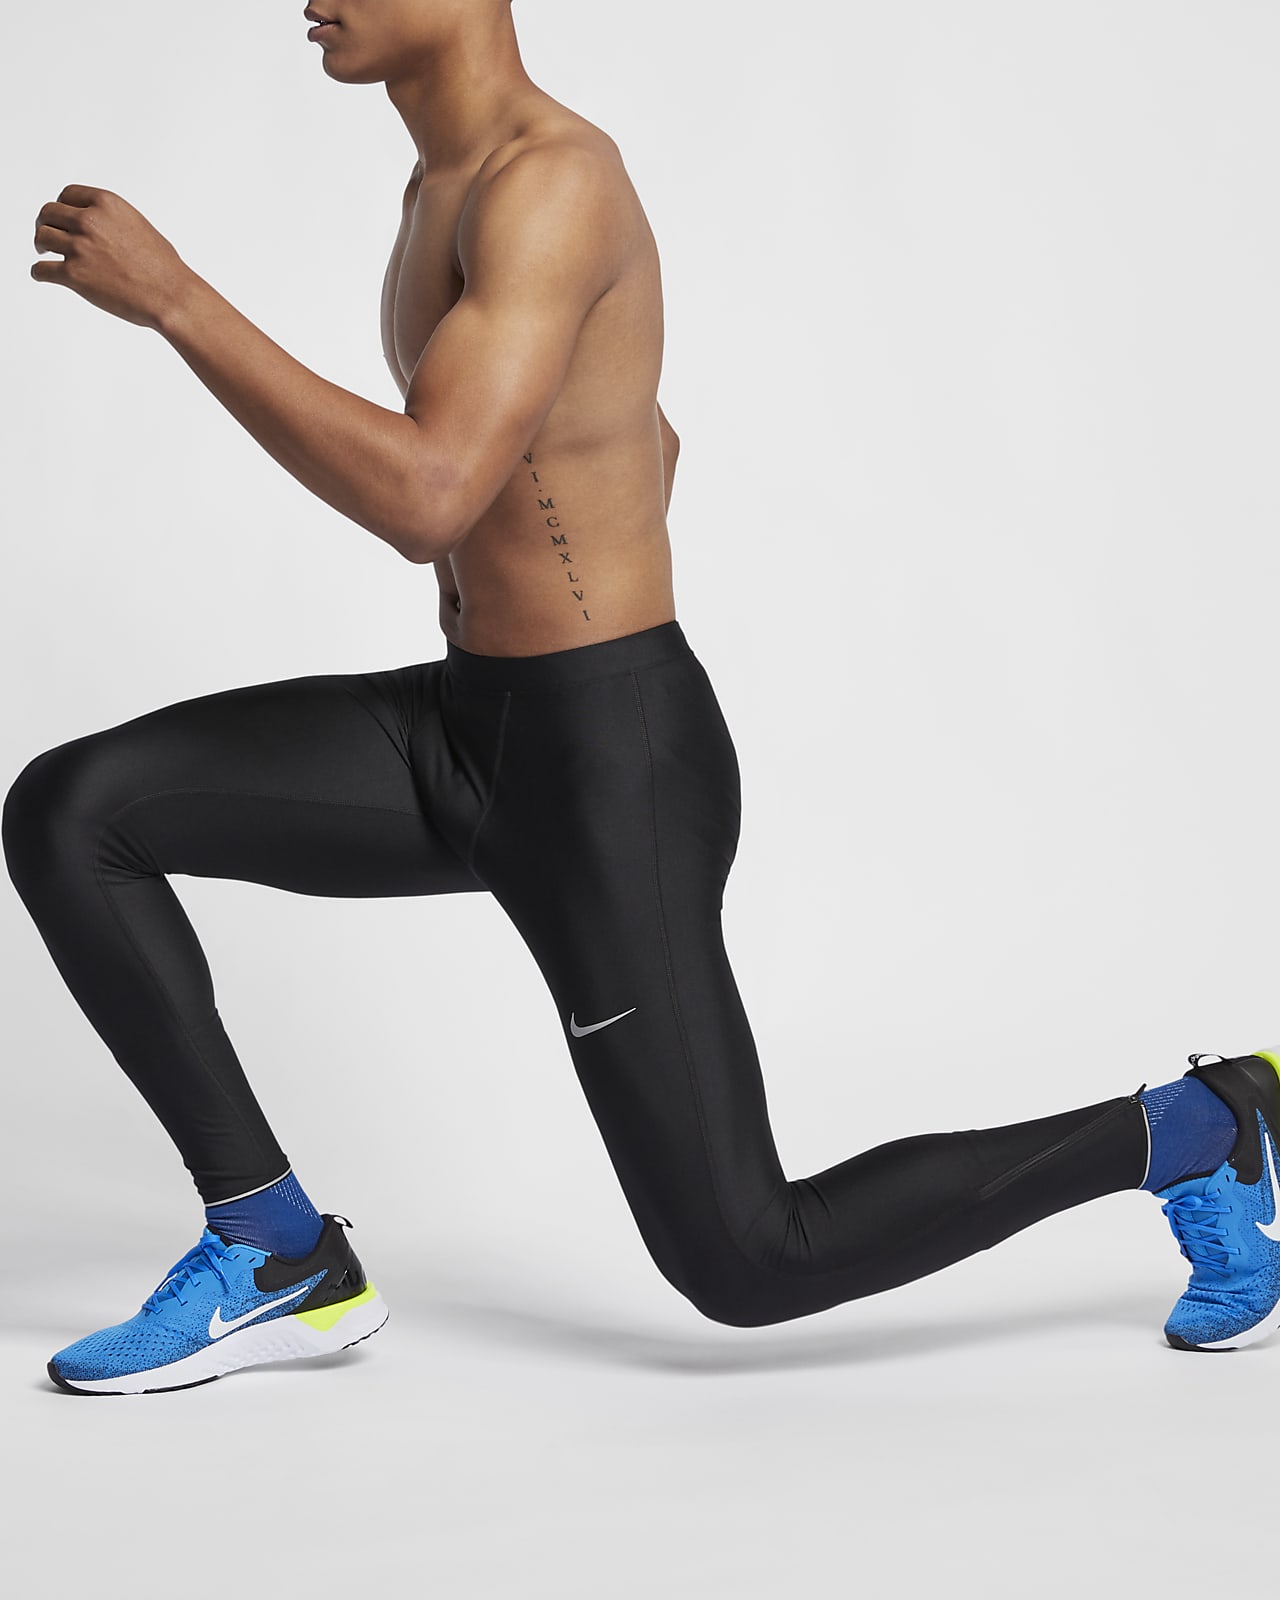 Nike Men's Running Tights.